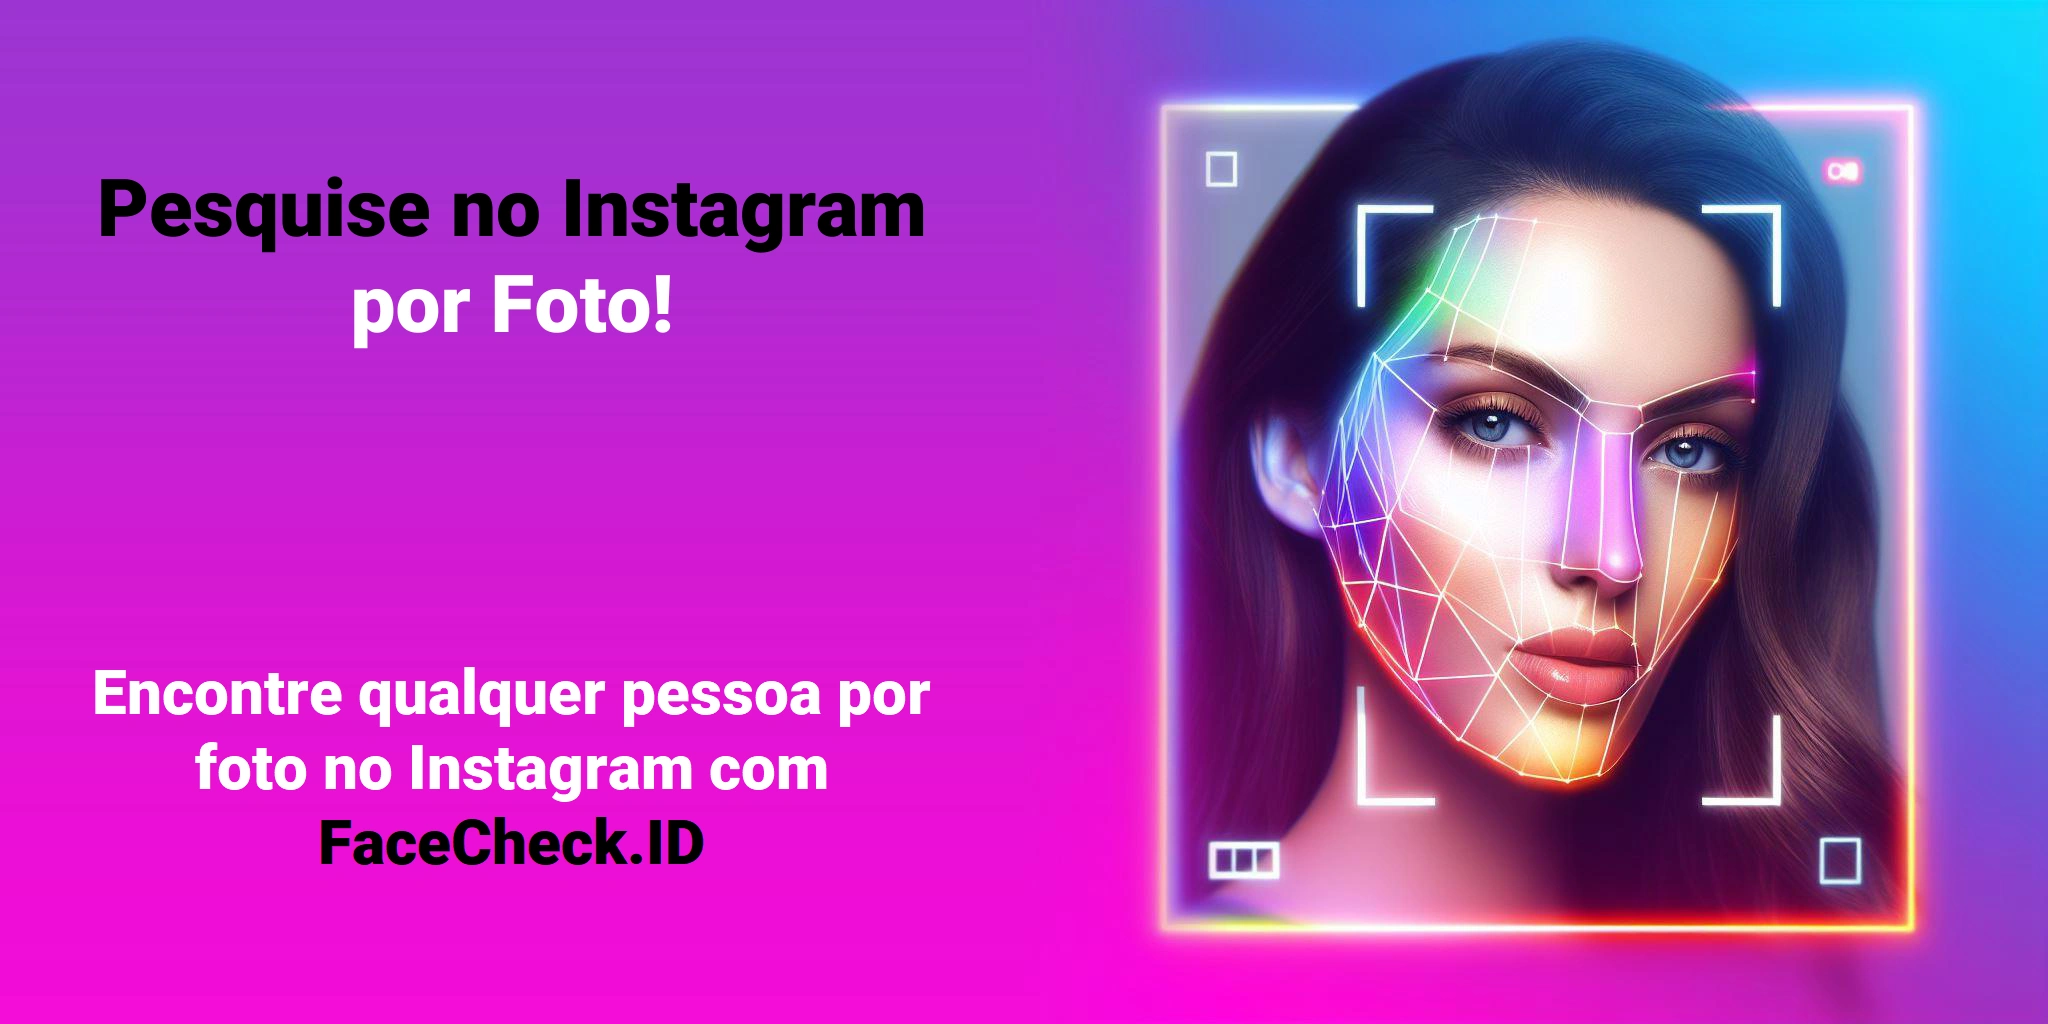 Pesquise no Instagram por Foto! Encontre qualquer pessoa por foto no Instagram com FaceCheck.ID